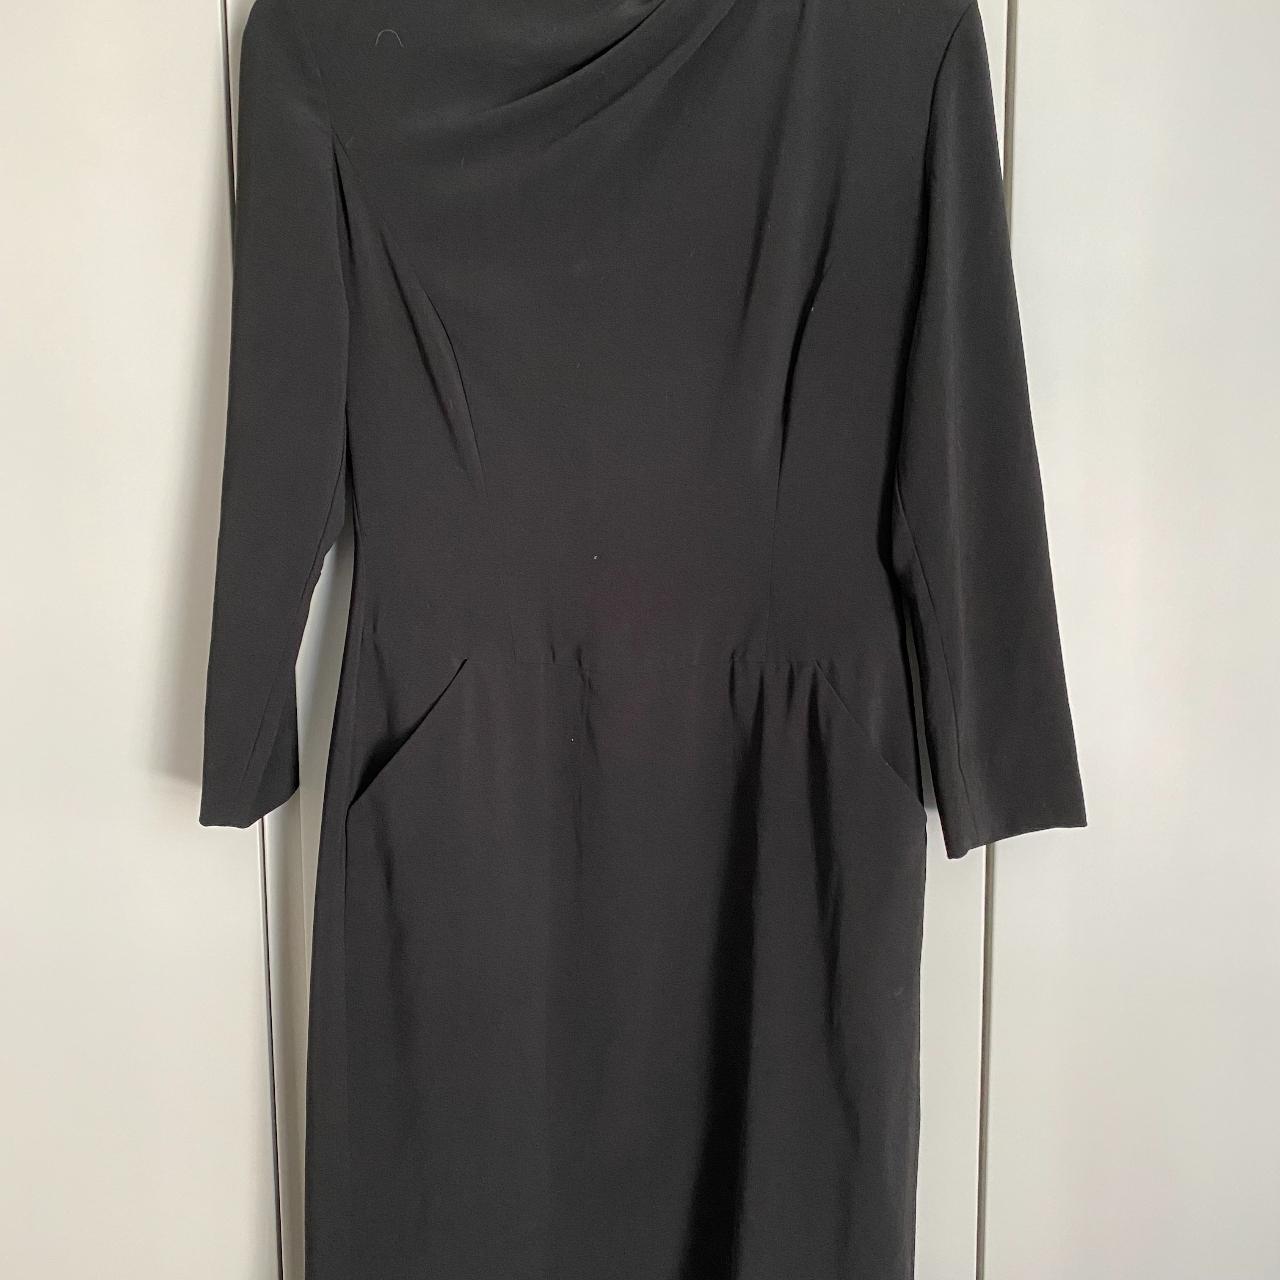 Tegan Black Mini Dress with Pockets - size 10 - Depop